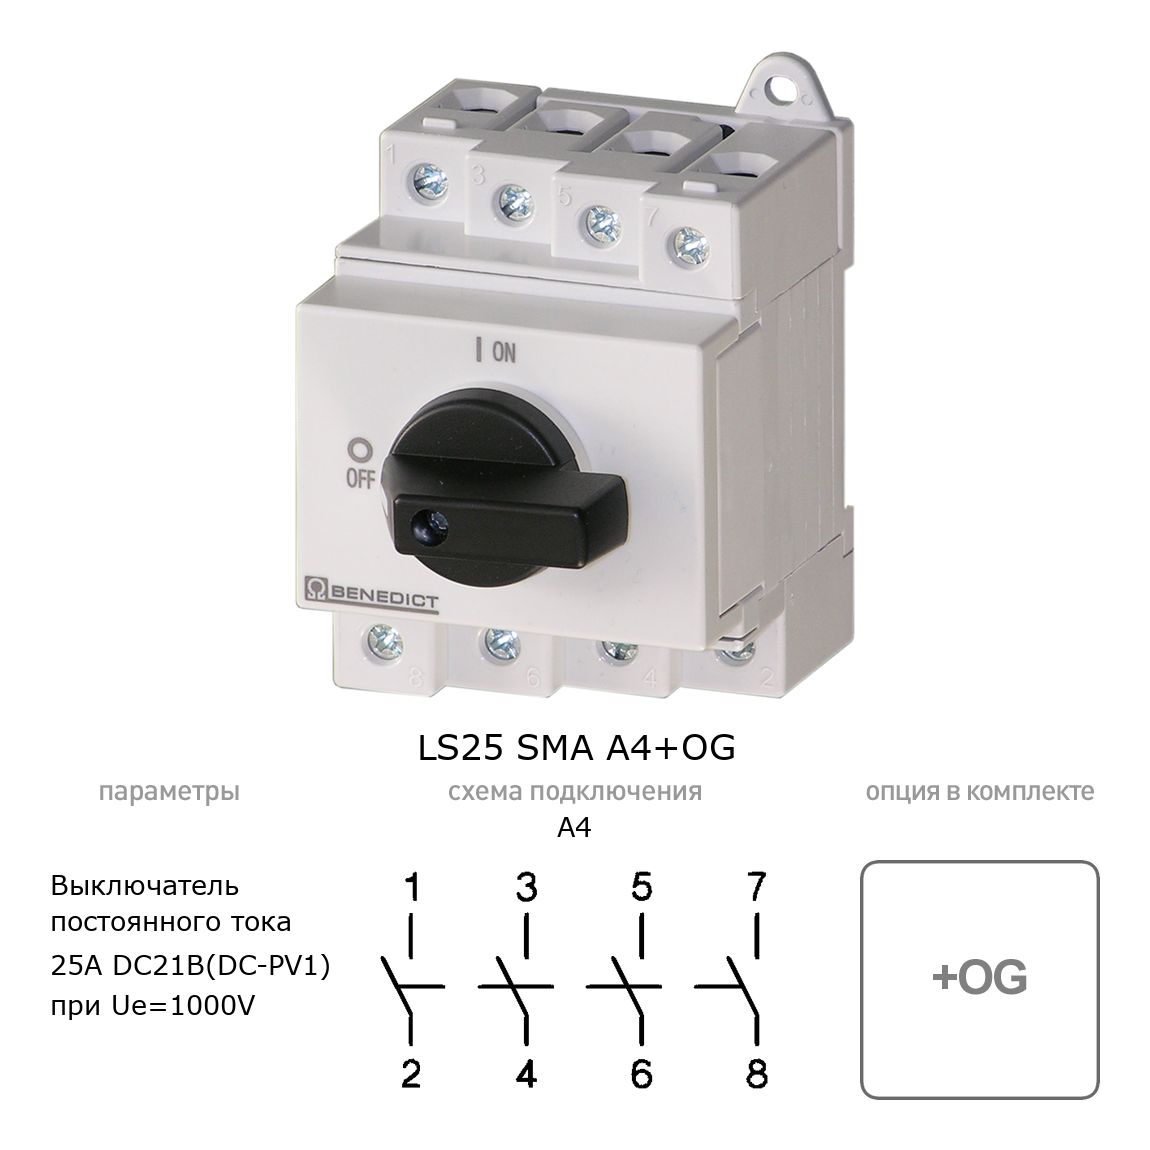 Кулачковый переключатель для постоянного тока (DC) LS25 SMA A4+OG BENEDICT